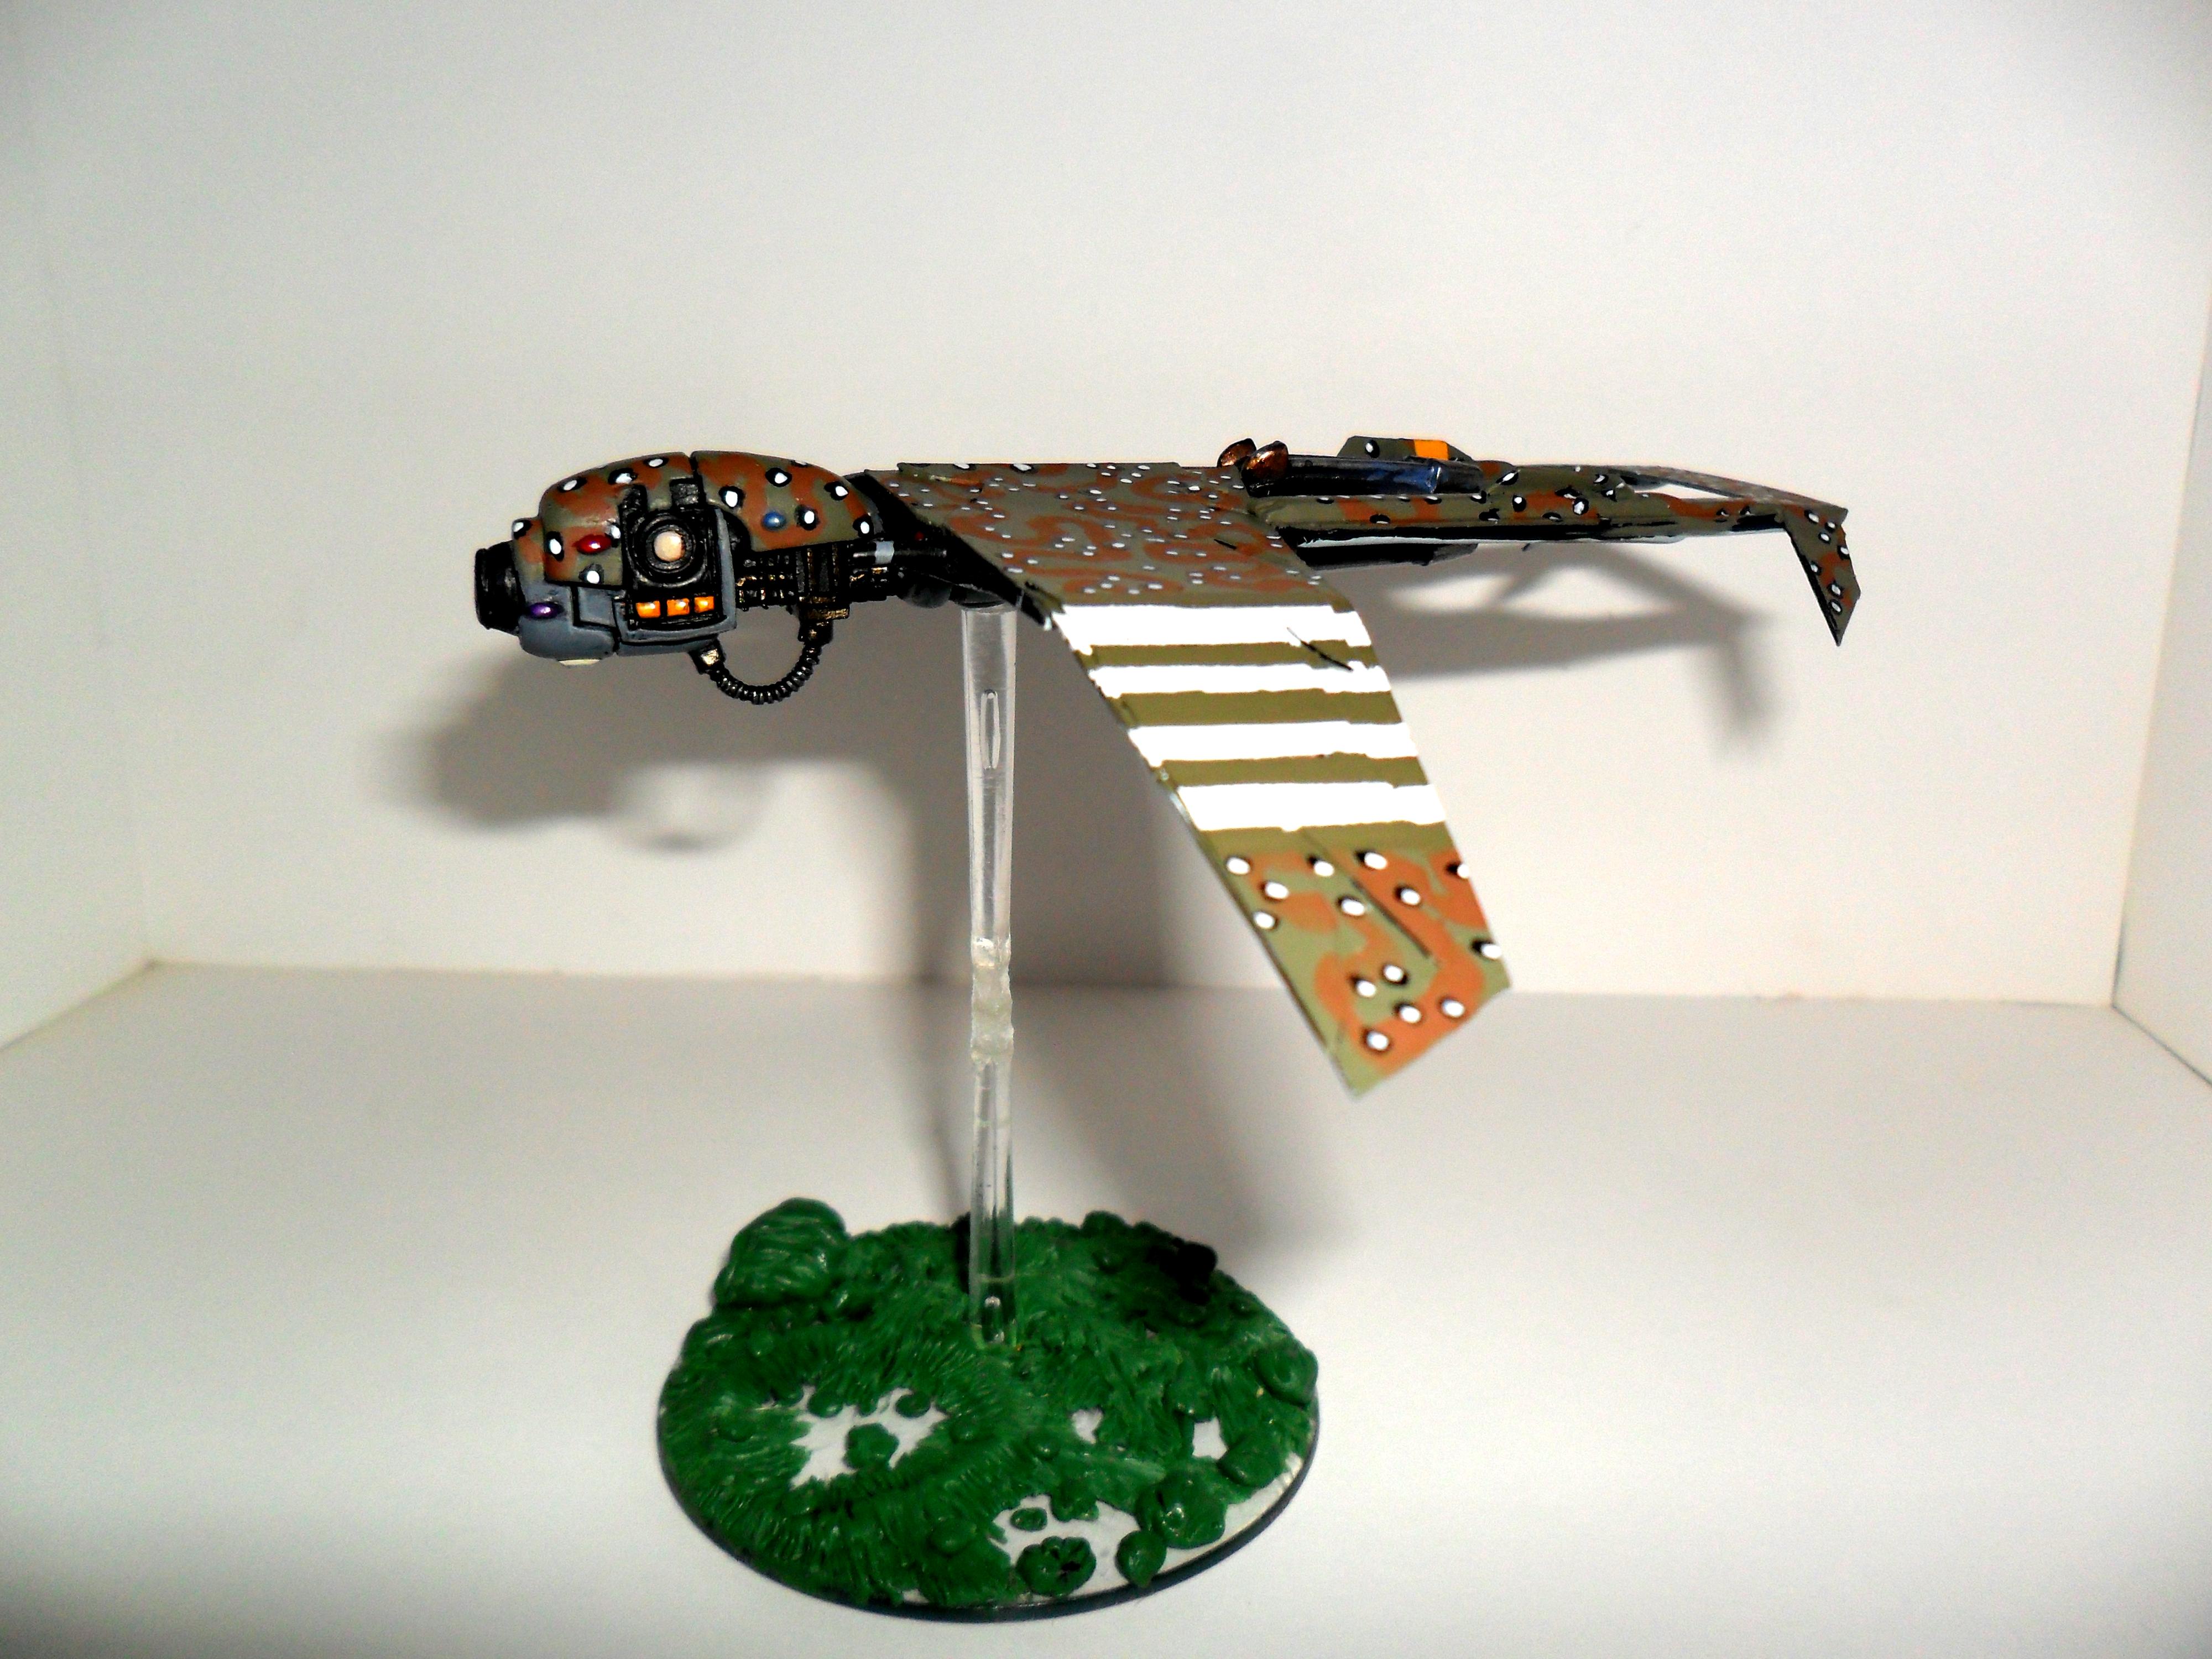 Imperial Guard, Imperial Gaurd Predator Drone